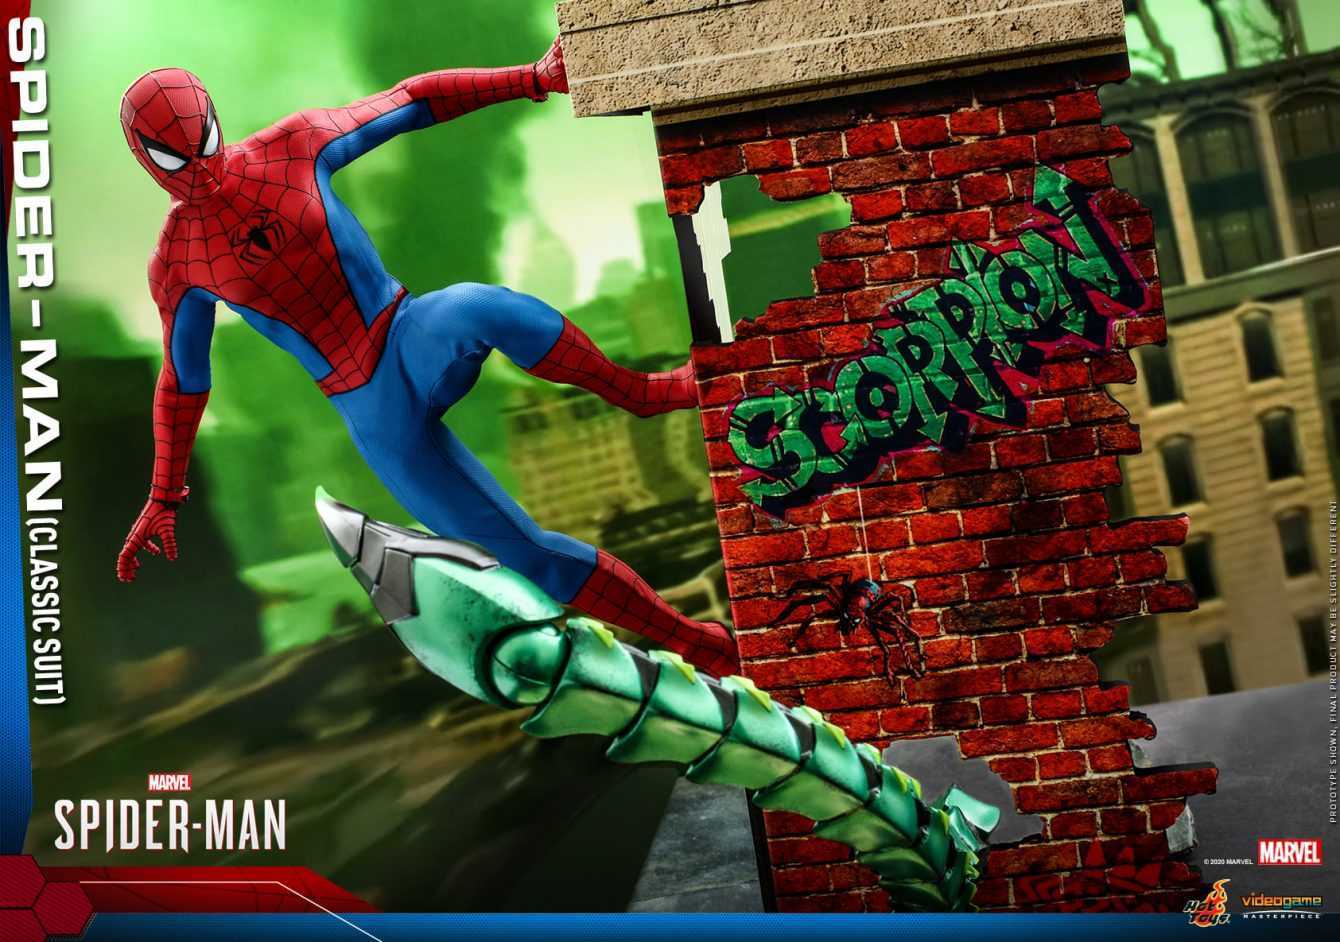 Marvel's Spider-Man: presentata la nuova figure di Hot Toys!